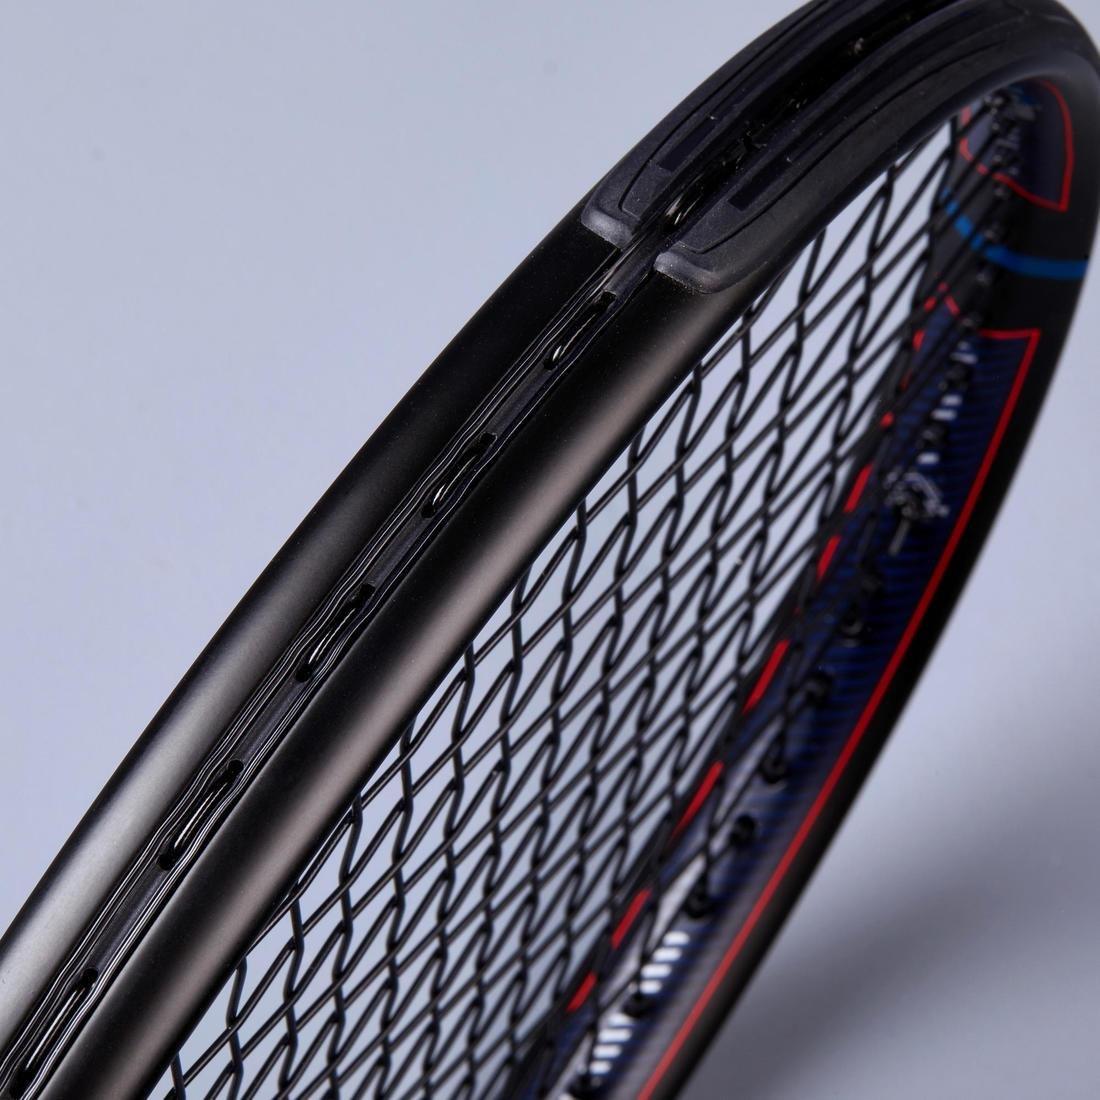 ARTENGO - Grip Adult Tennis Racket Tr500